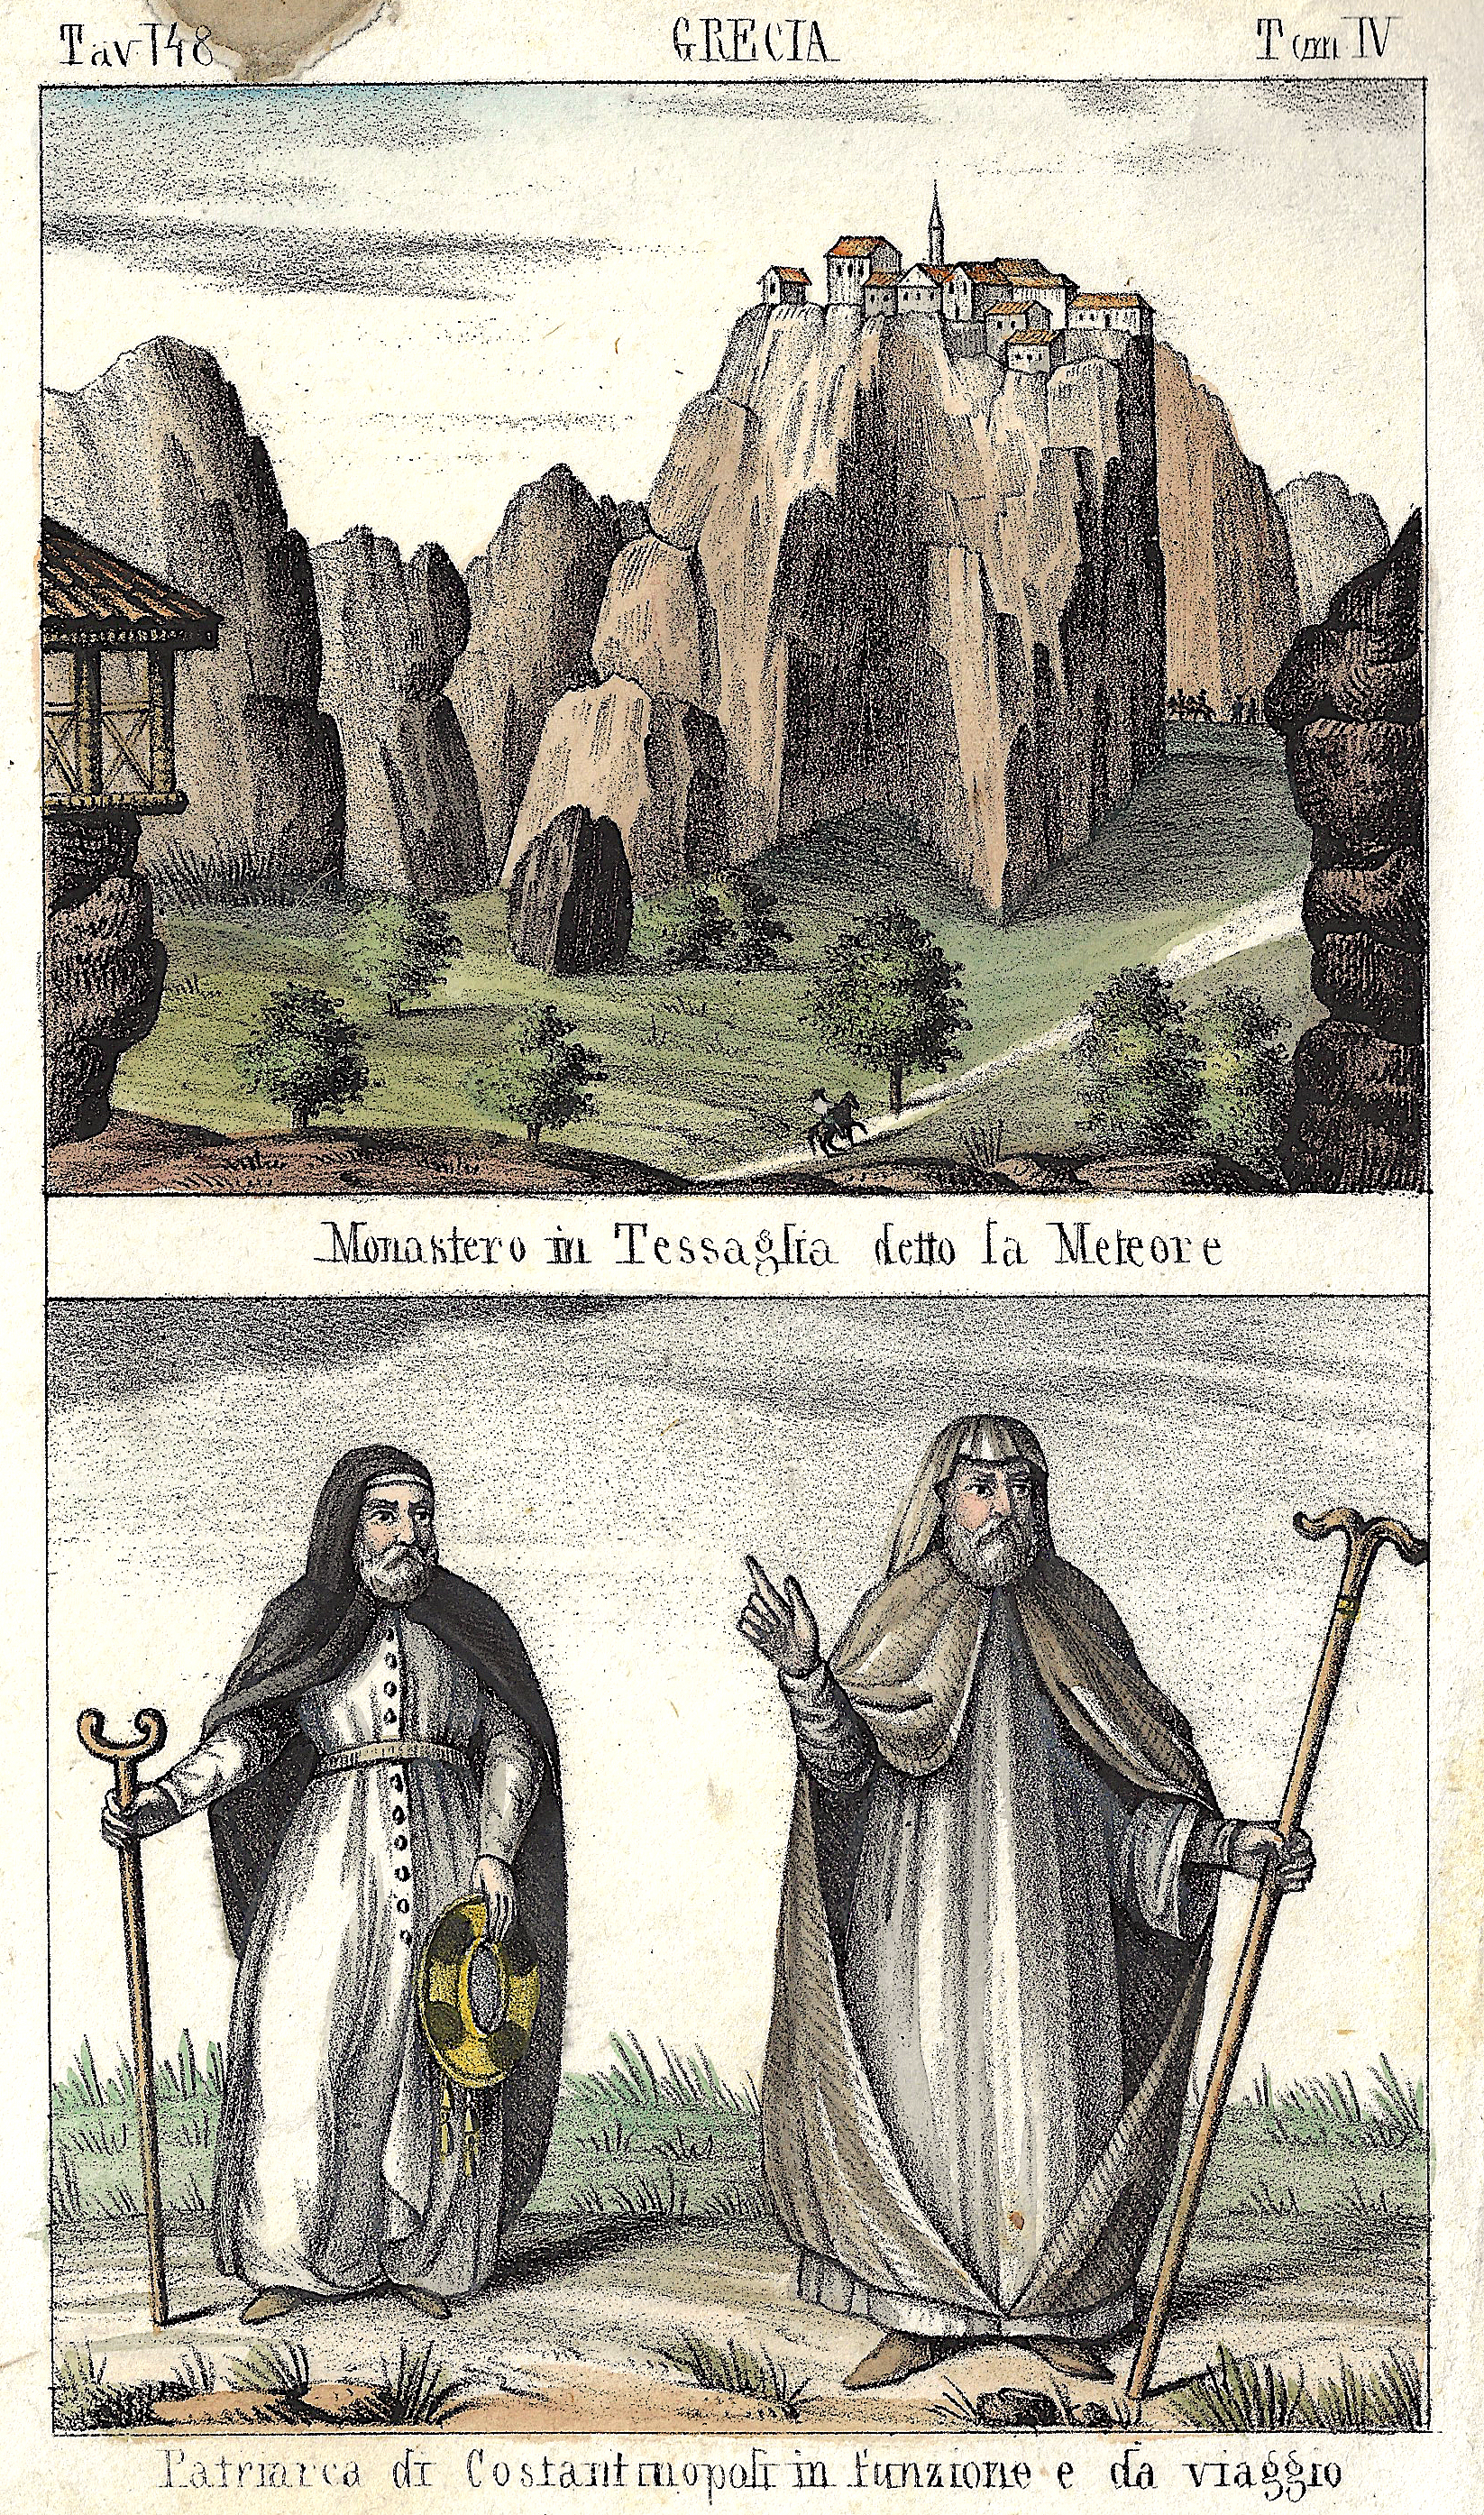 Anonymus  Grecia Monastero in Tessaglia detto la Meteore / Patriarca di Costantinopoli in funzione e da viaggio